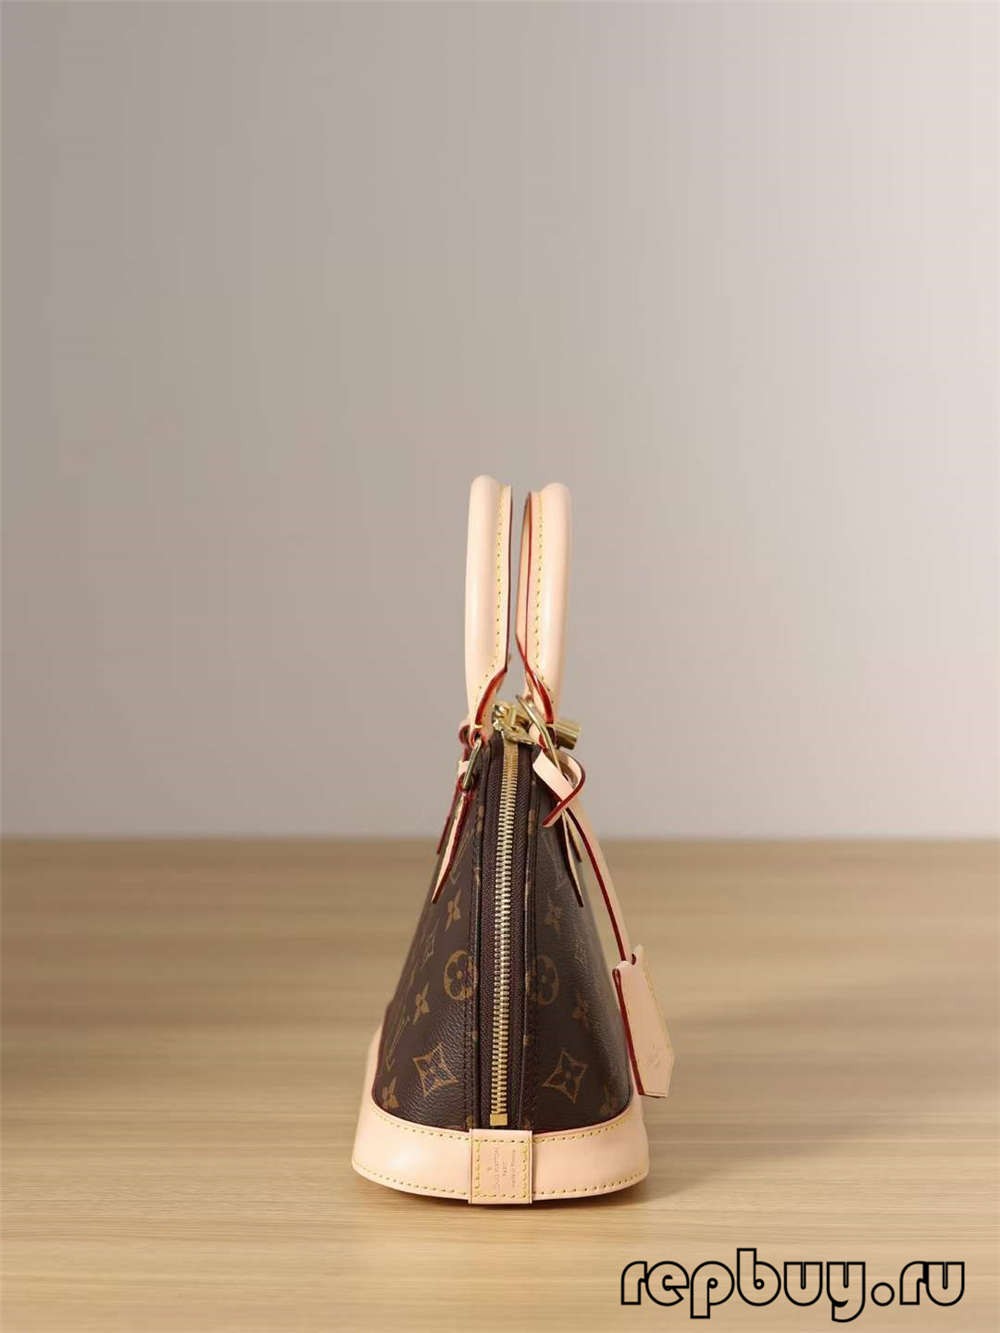 Louis Vuitton M53152 Alma BB ከፍተኛ ጥራት ያላቸው የተባዙ ቦርሳዎች (2022 ልዩ) -ምርጥ ጥራት ያለው የውሸት ሉዊስ ቫንቶን ቦርሳ የመስመር ላይ መደብር ፣ ቅጂ ዲዛይነር ቦርሳ ru